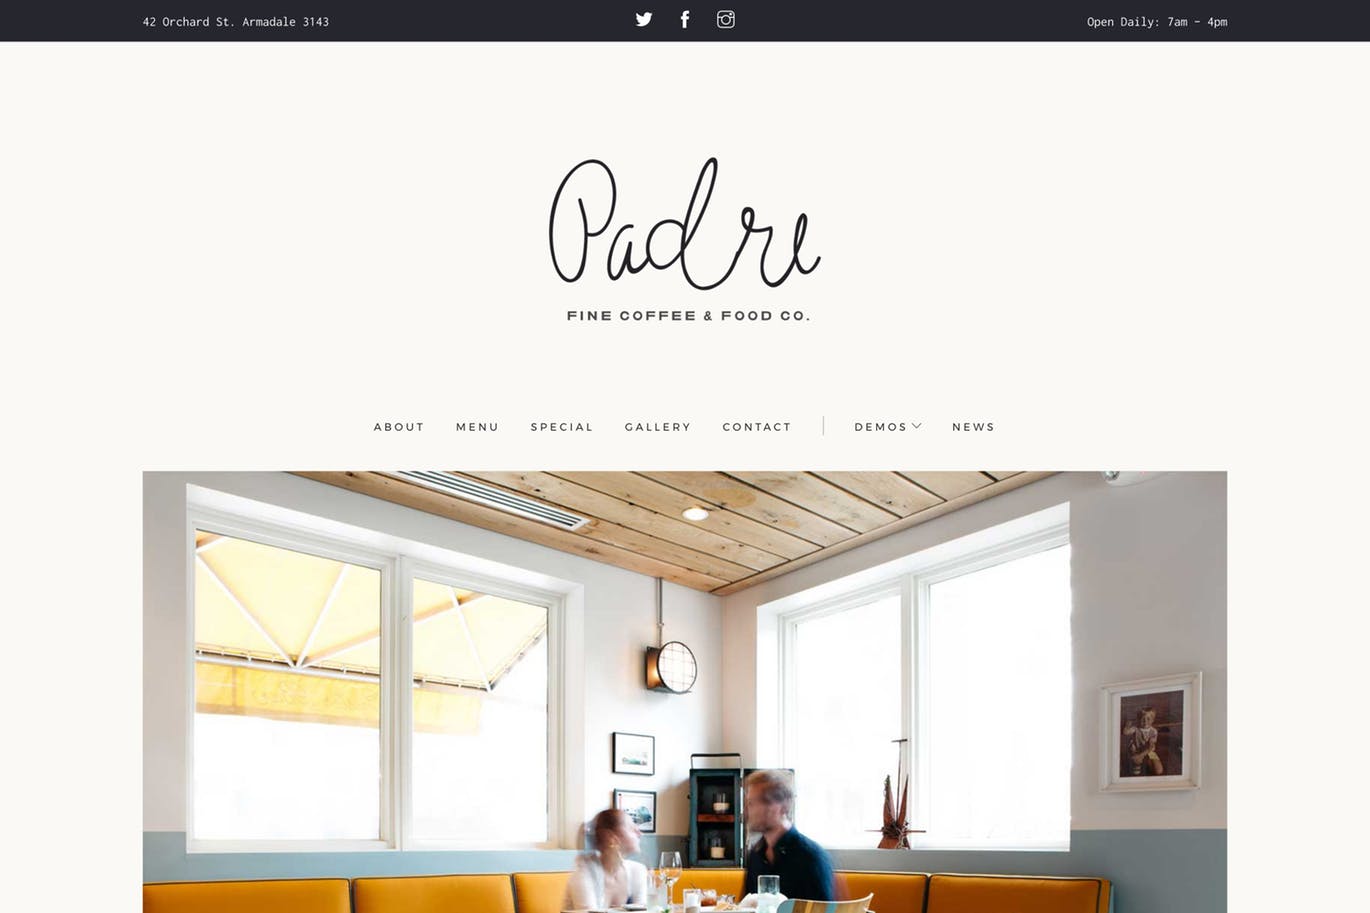 咖啡店/西餐厅官网设计HTML模板蚂蚁素材精选 Padre | Cafe & Restaurant HTML Template插图